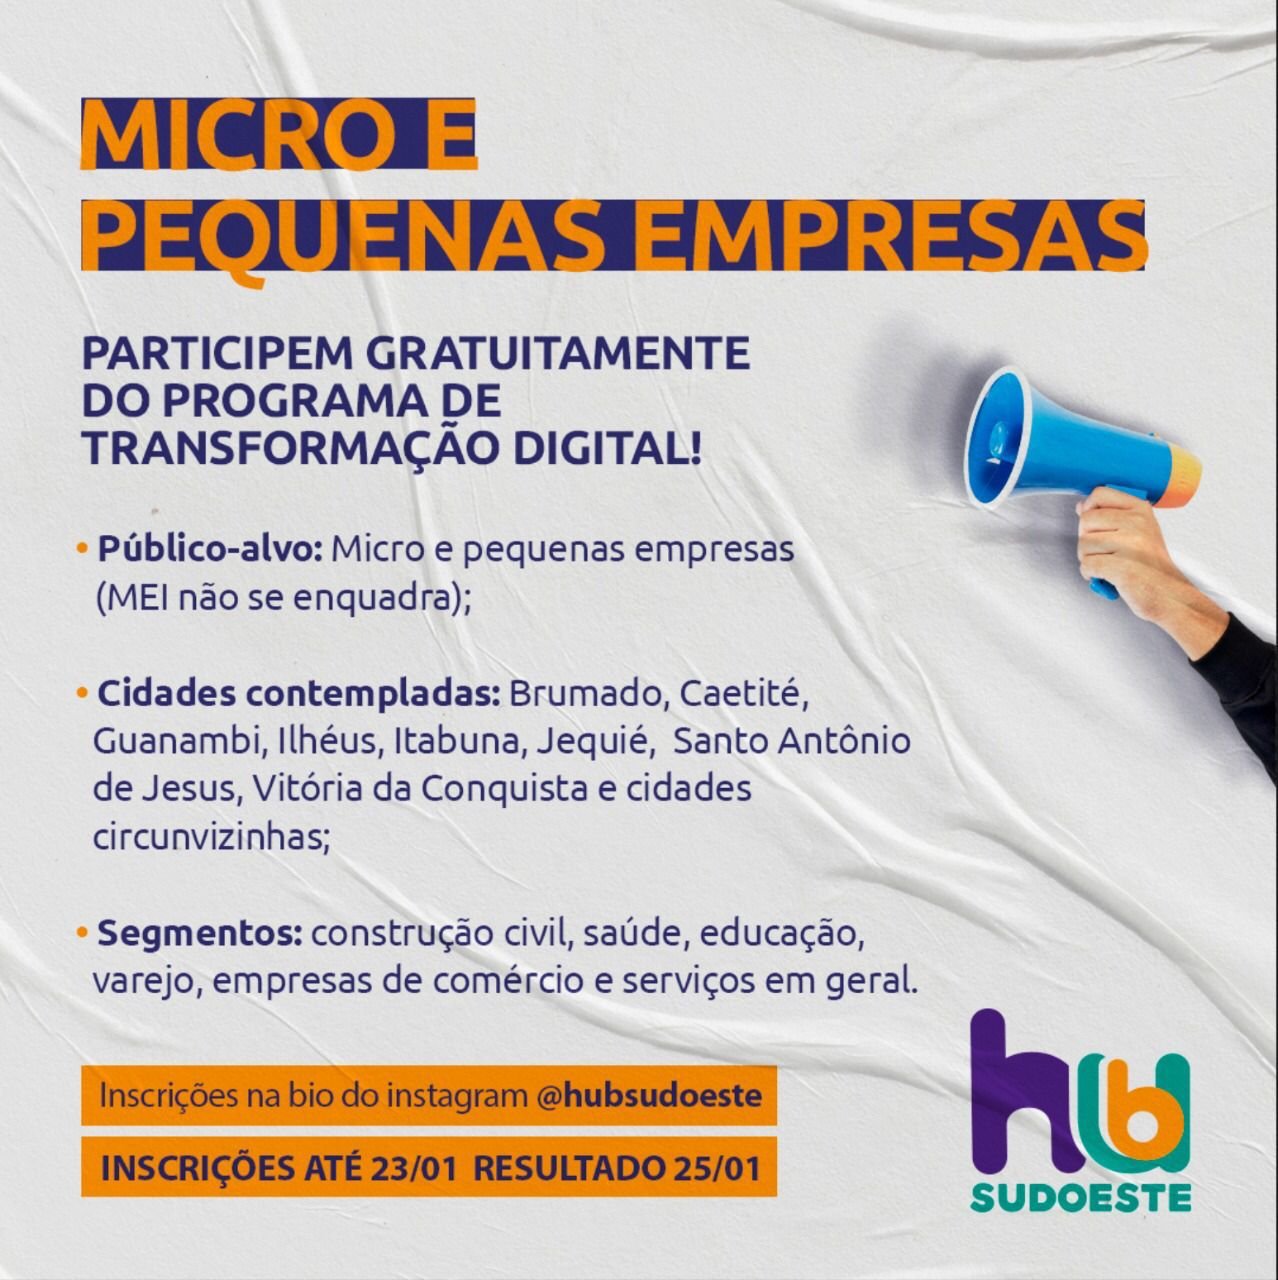 Oportunidade para micro e pequenas empresas: programa de transformação digital inscreve até domingo, 23.